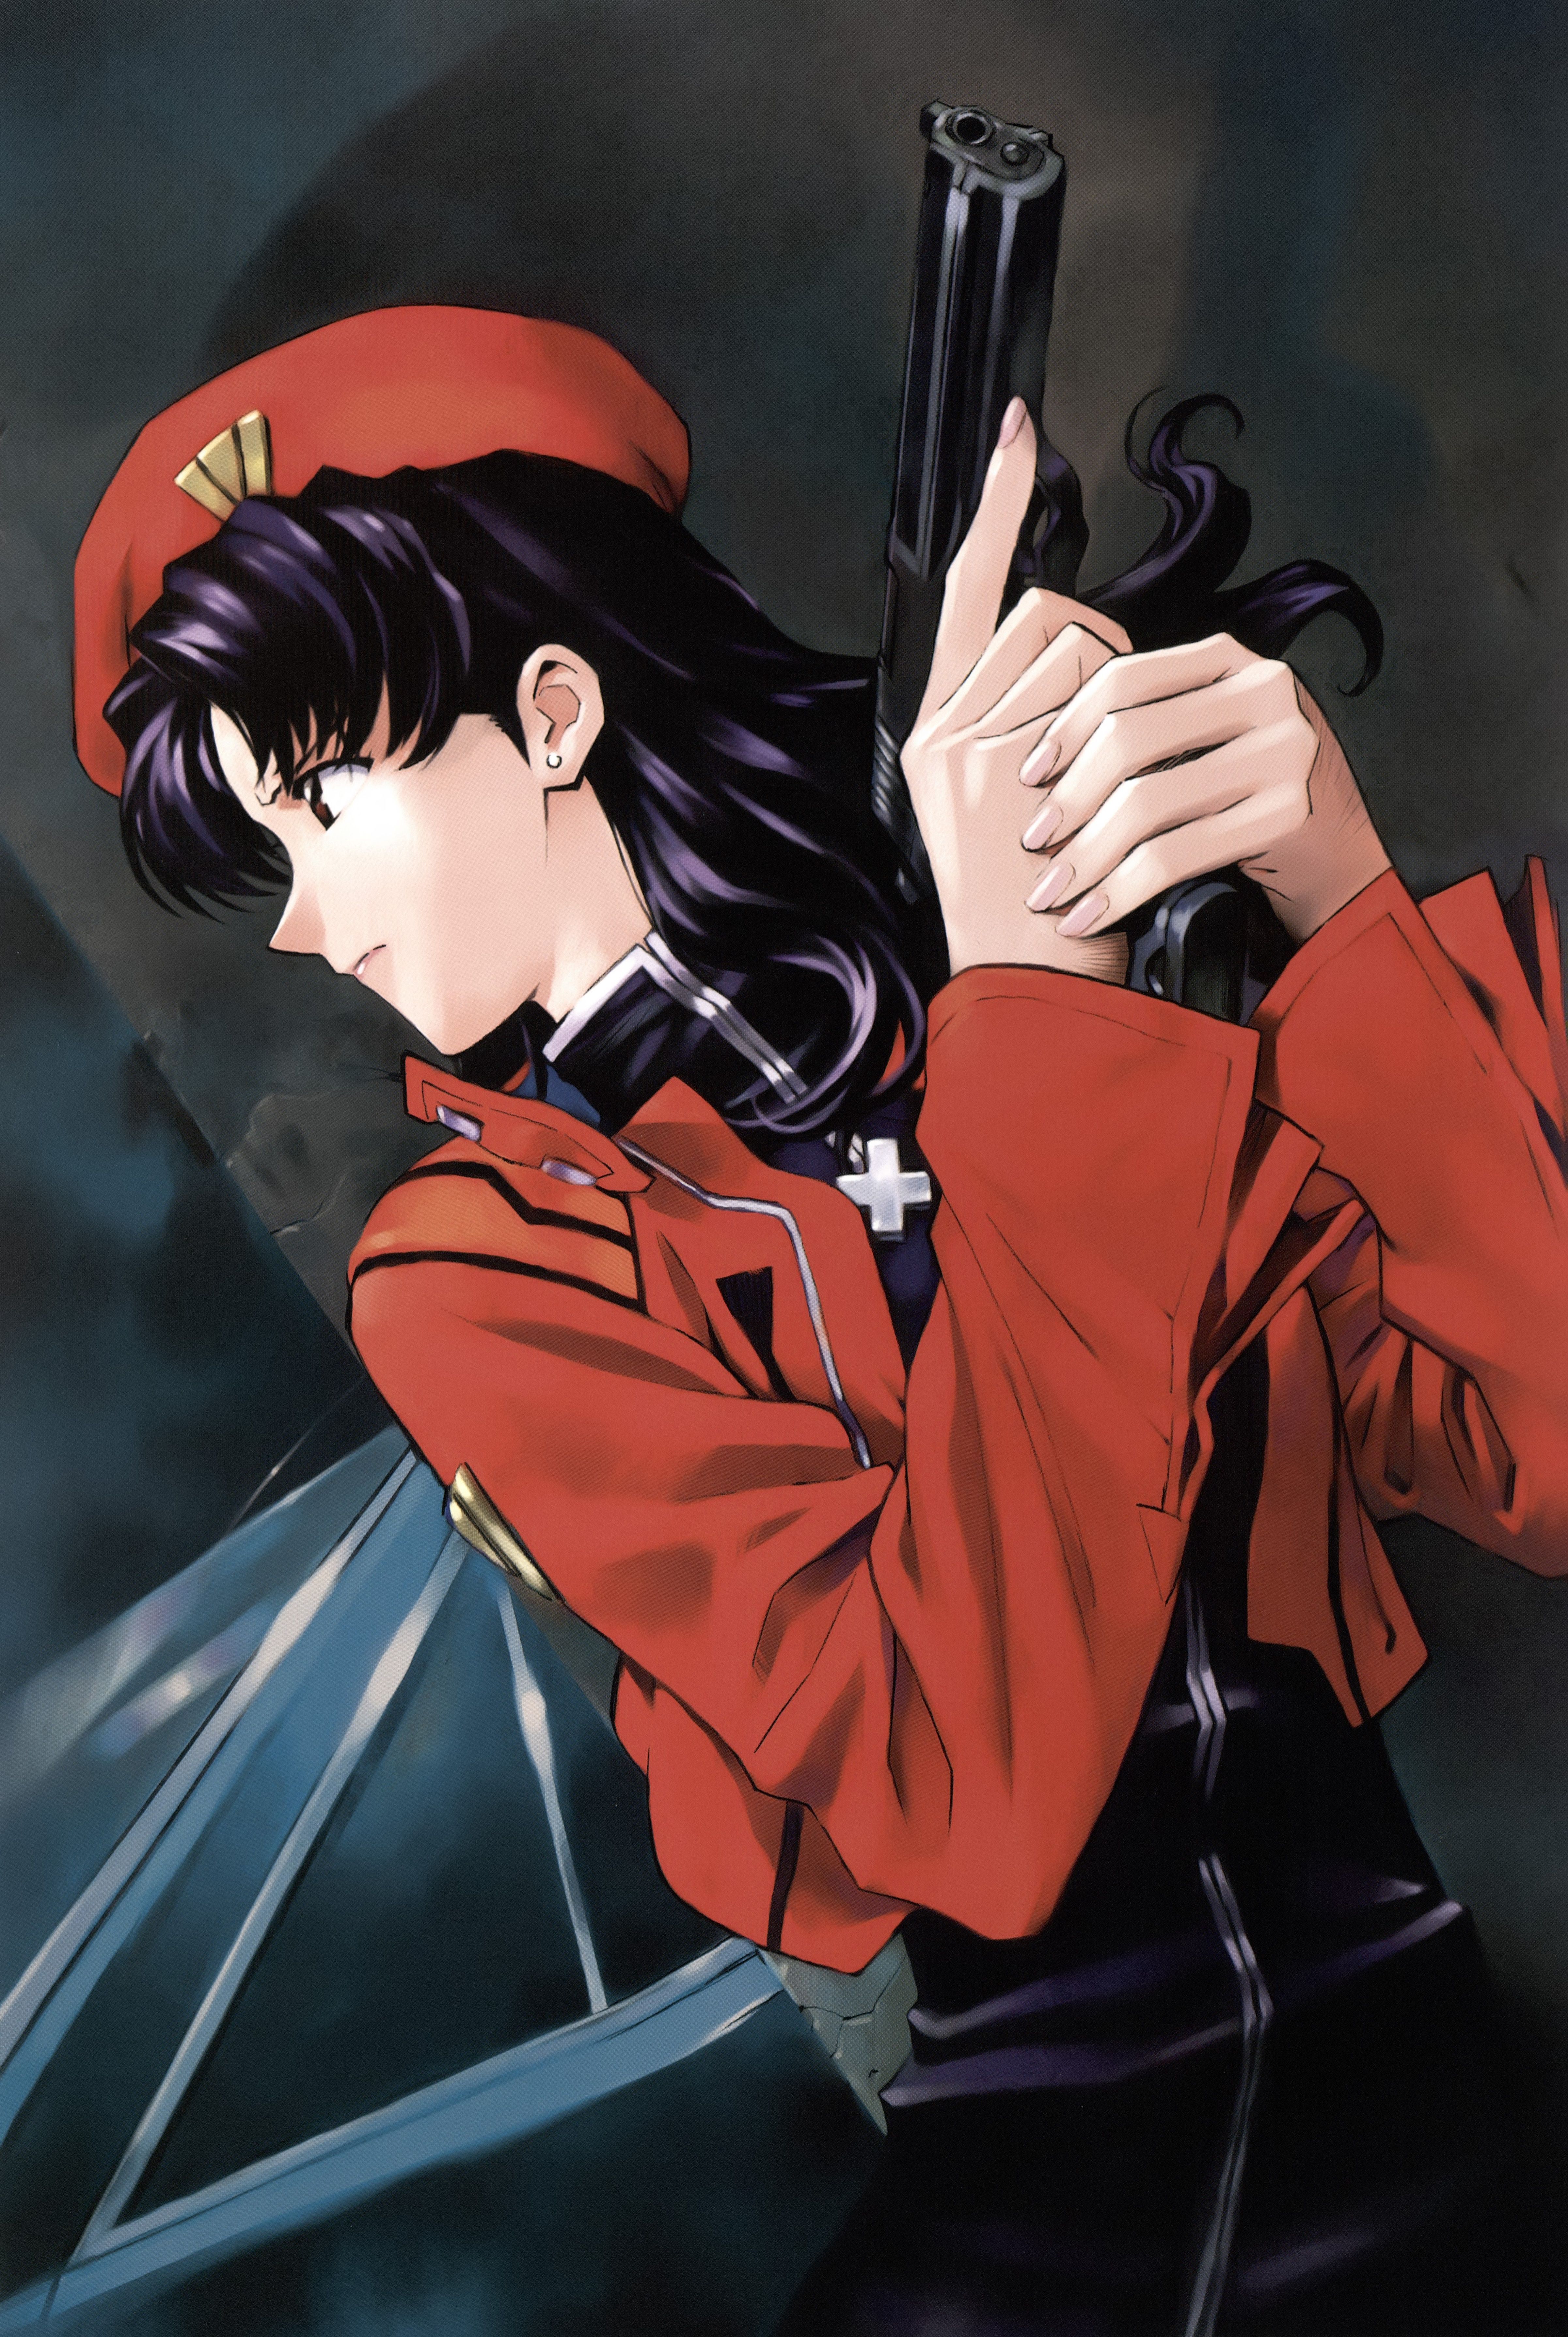 Katsuragi Misato Genesis Evangelion Anime Image Board